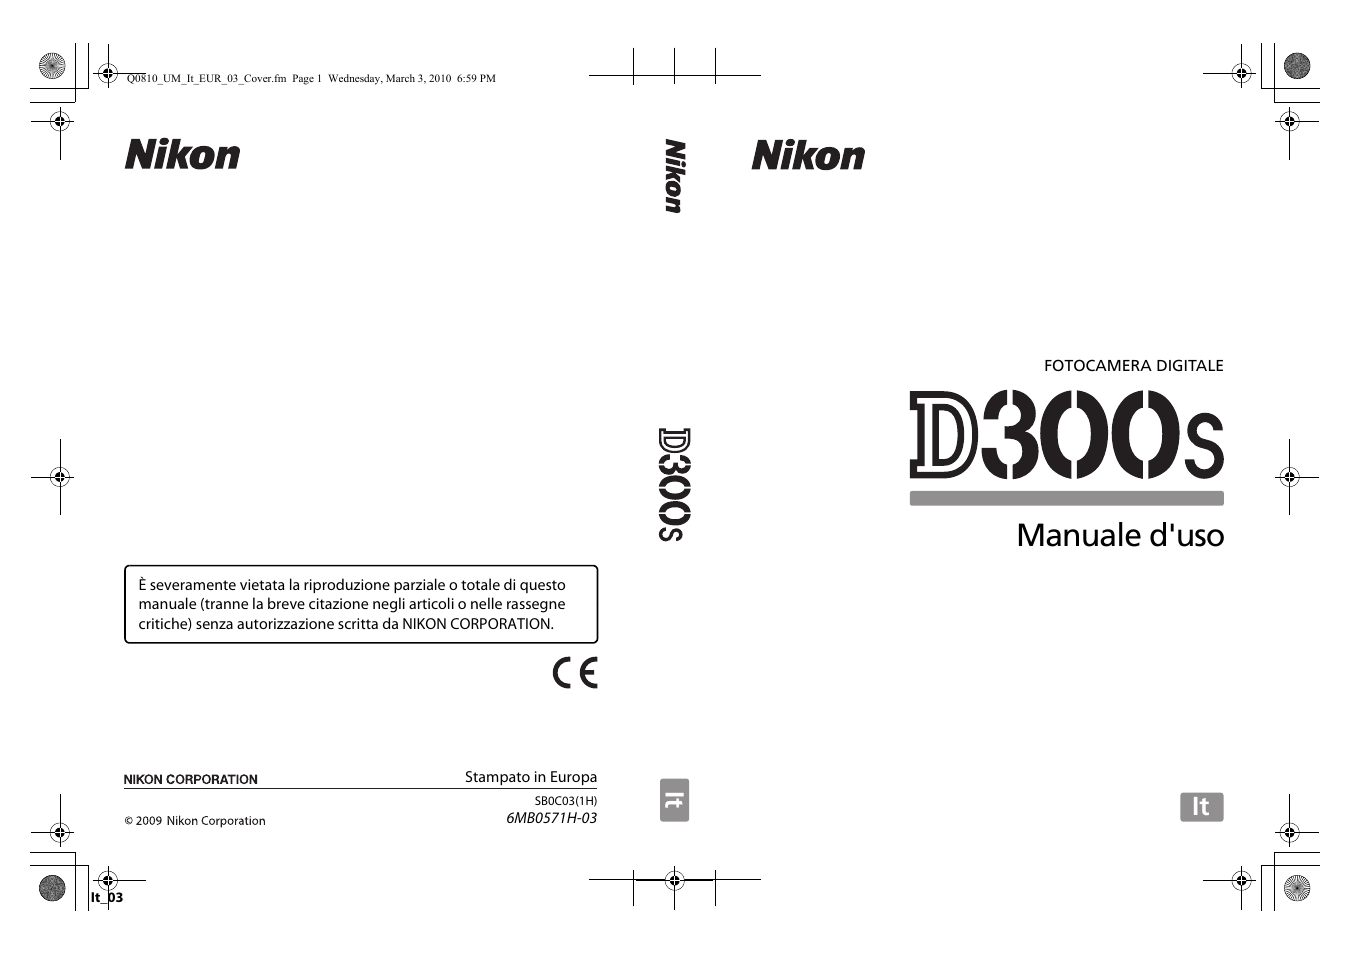 Fotocamera Nikon D300S Stampato completamente manuale di istruzioni guida utente 432 pagine A4 